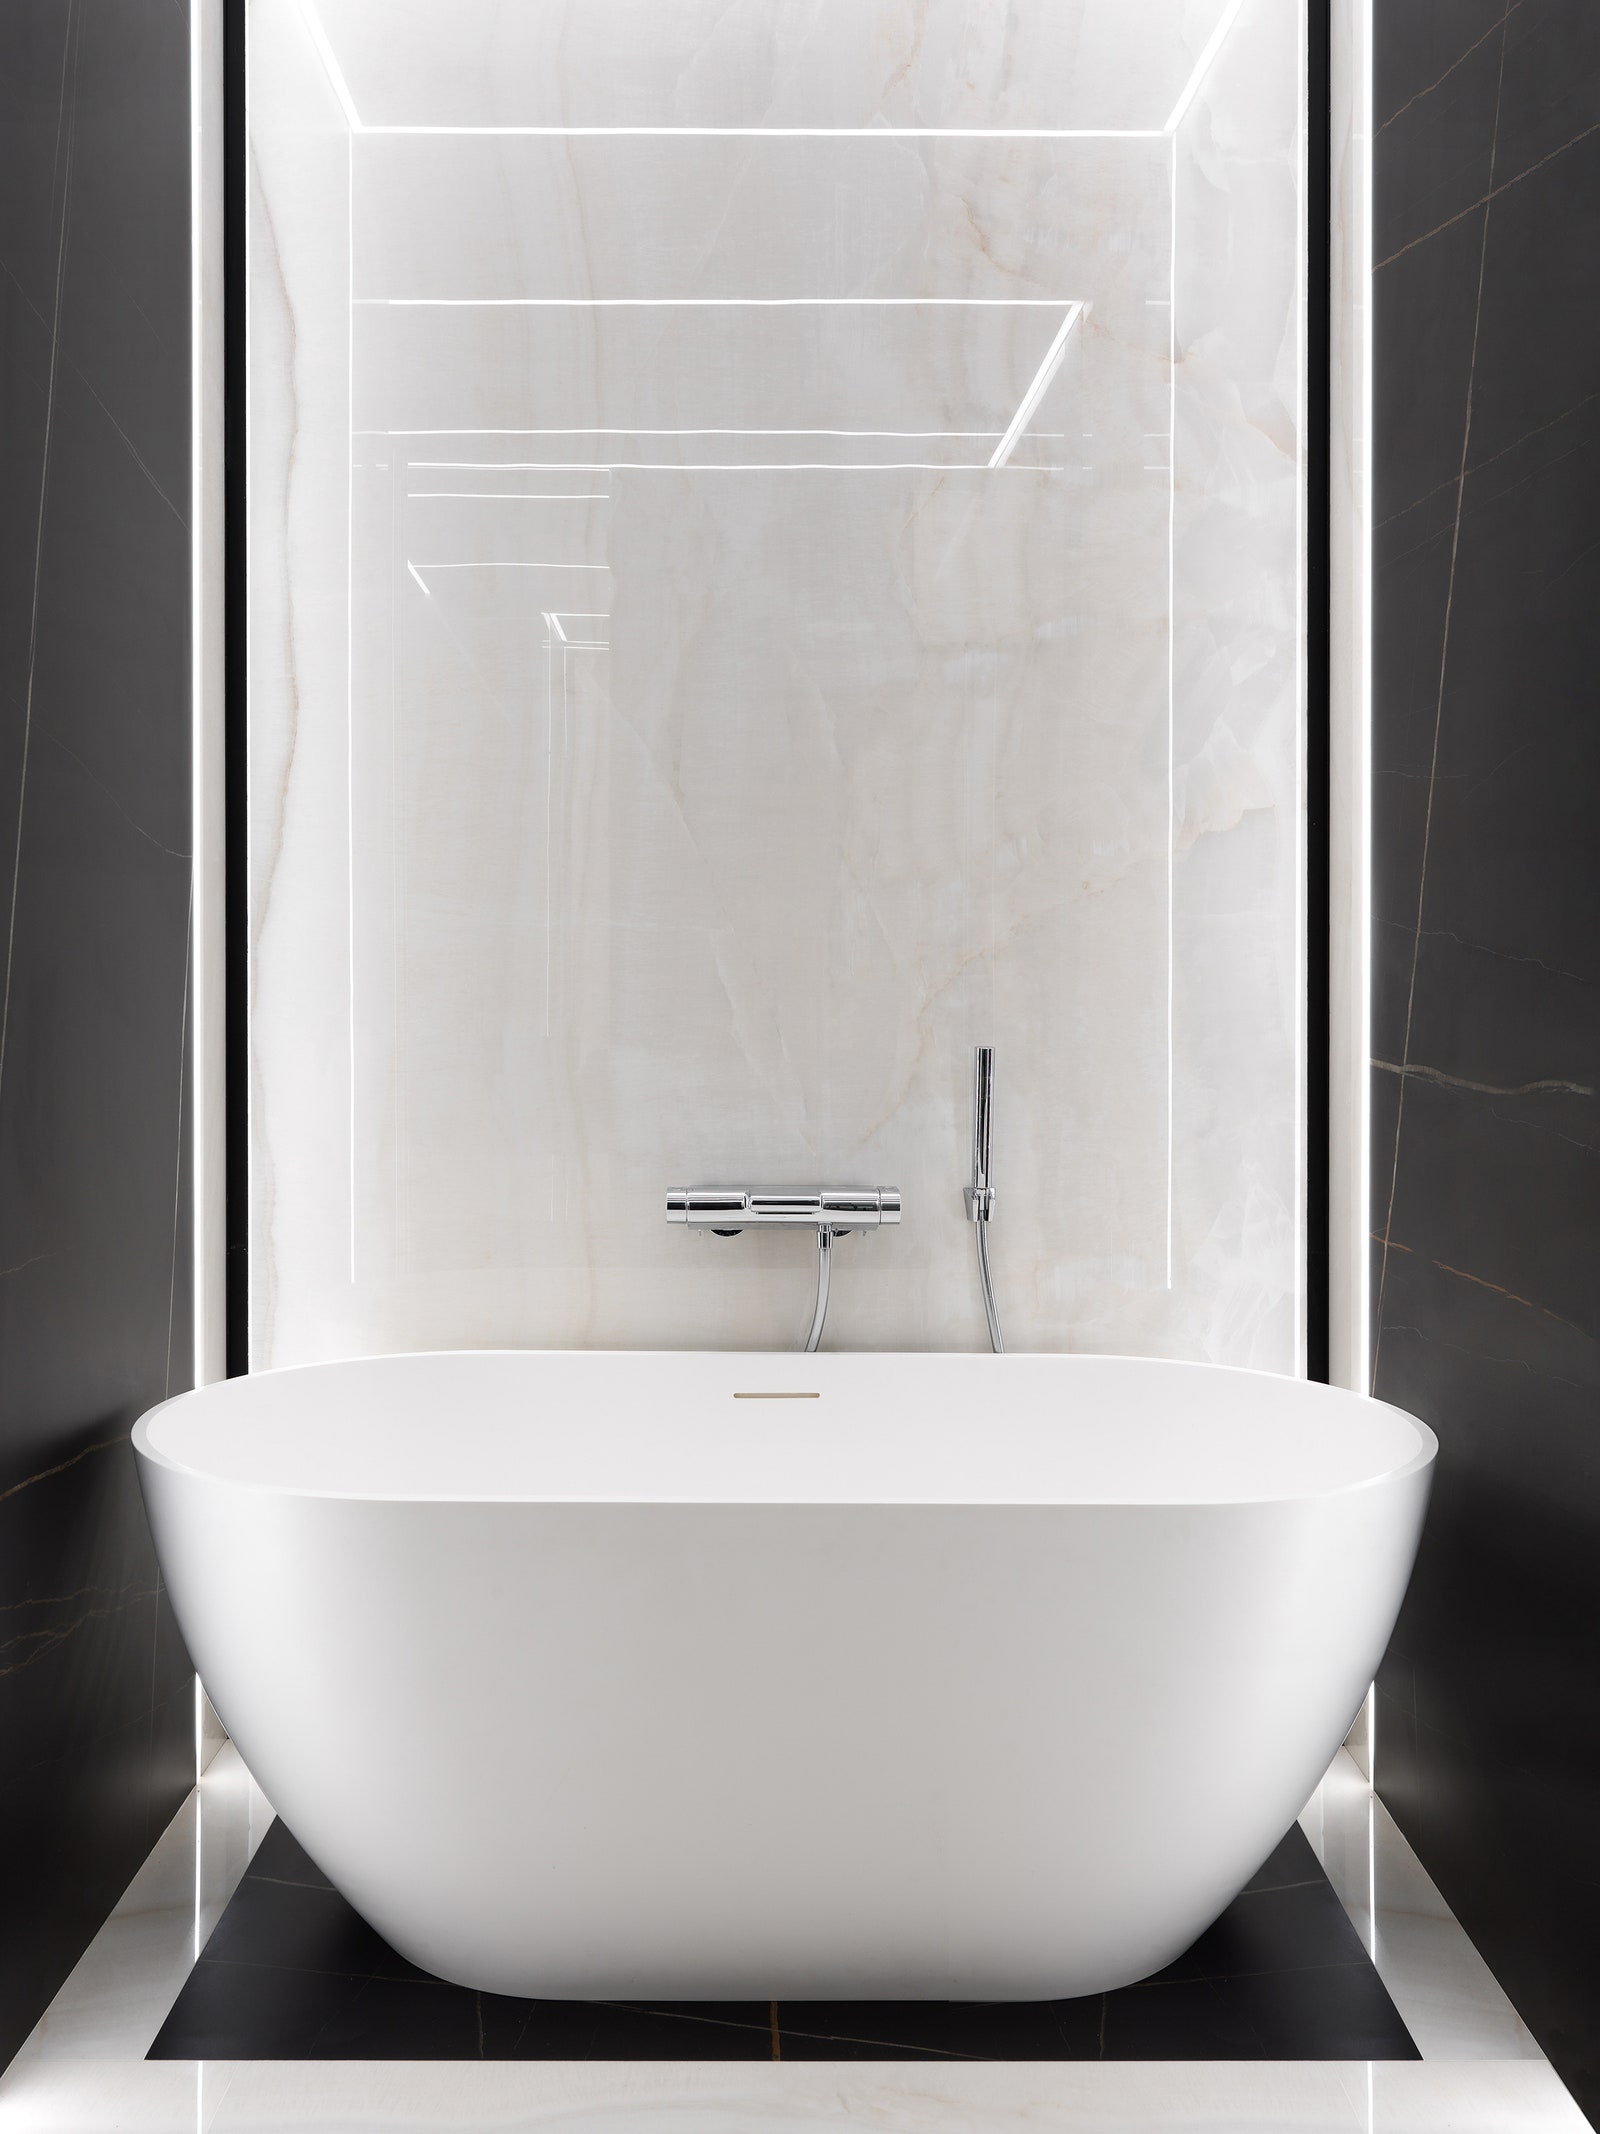 Фрагмент ванной комнаты. Ванна Riho термостат для ванны Grohe керамогранит Inalco и Graniti Fiandre.